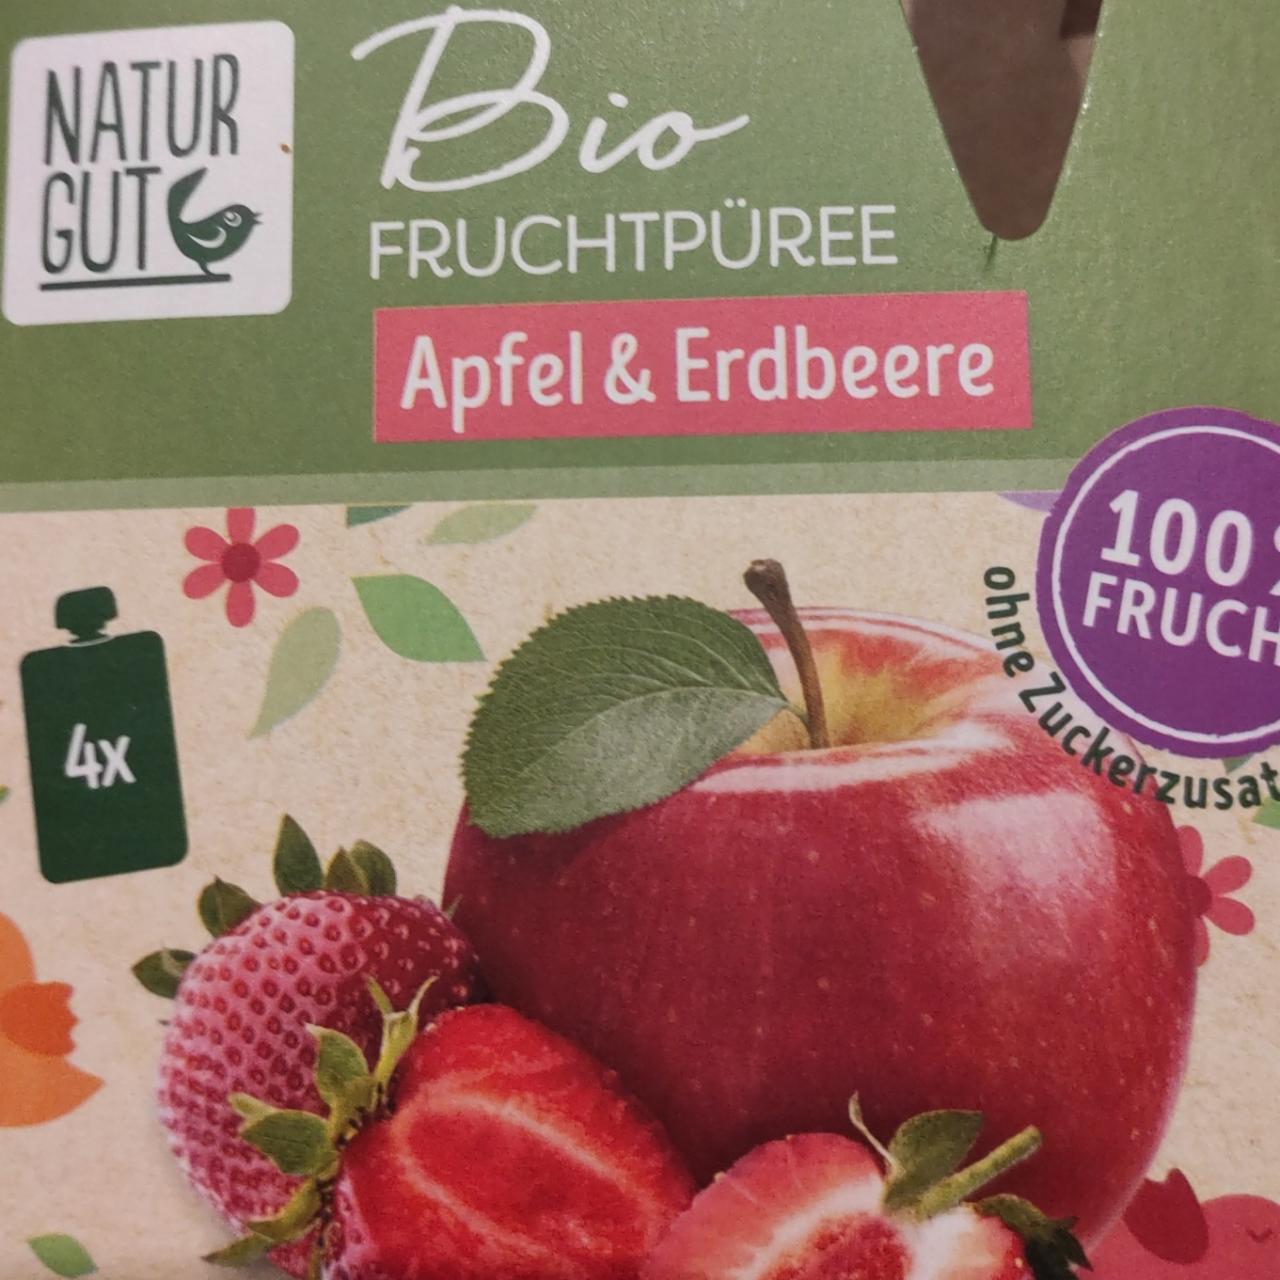 Fotografie - Bio Fruchtpüree Apfel & Erdbeere Natur Gut